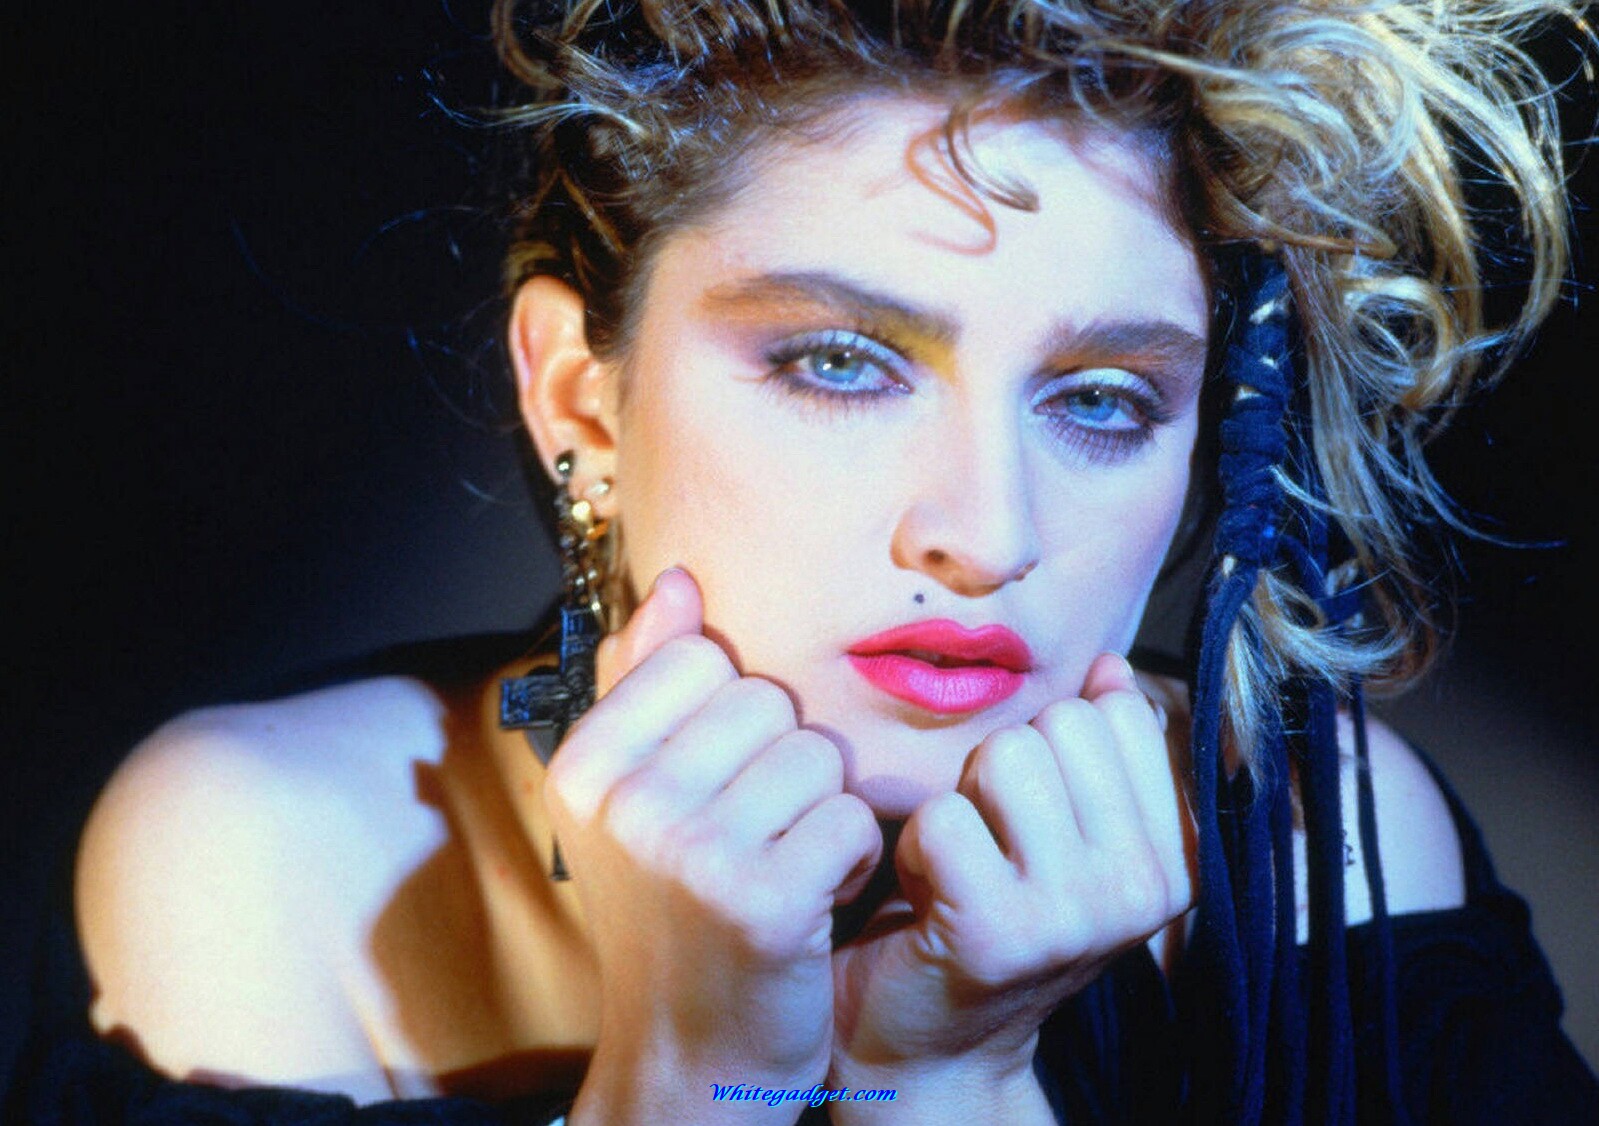 [40+] Madonna iPhone Wallpapers | WallpaperSafari